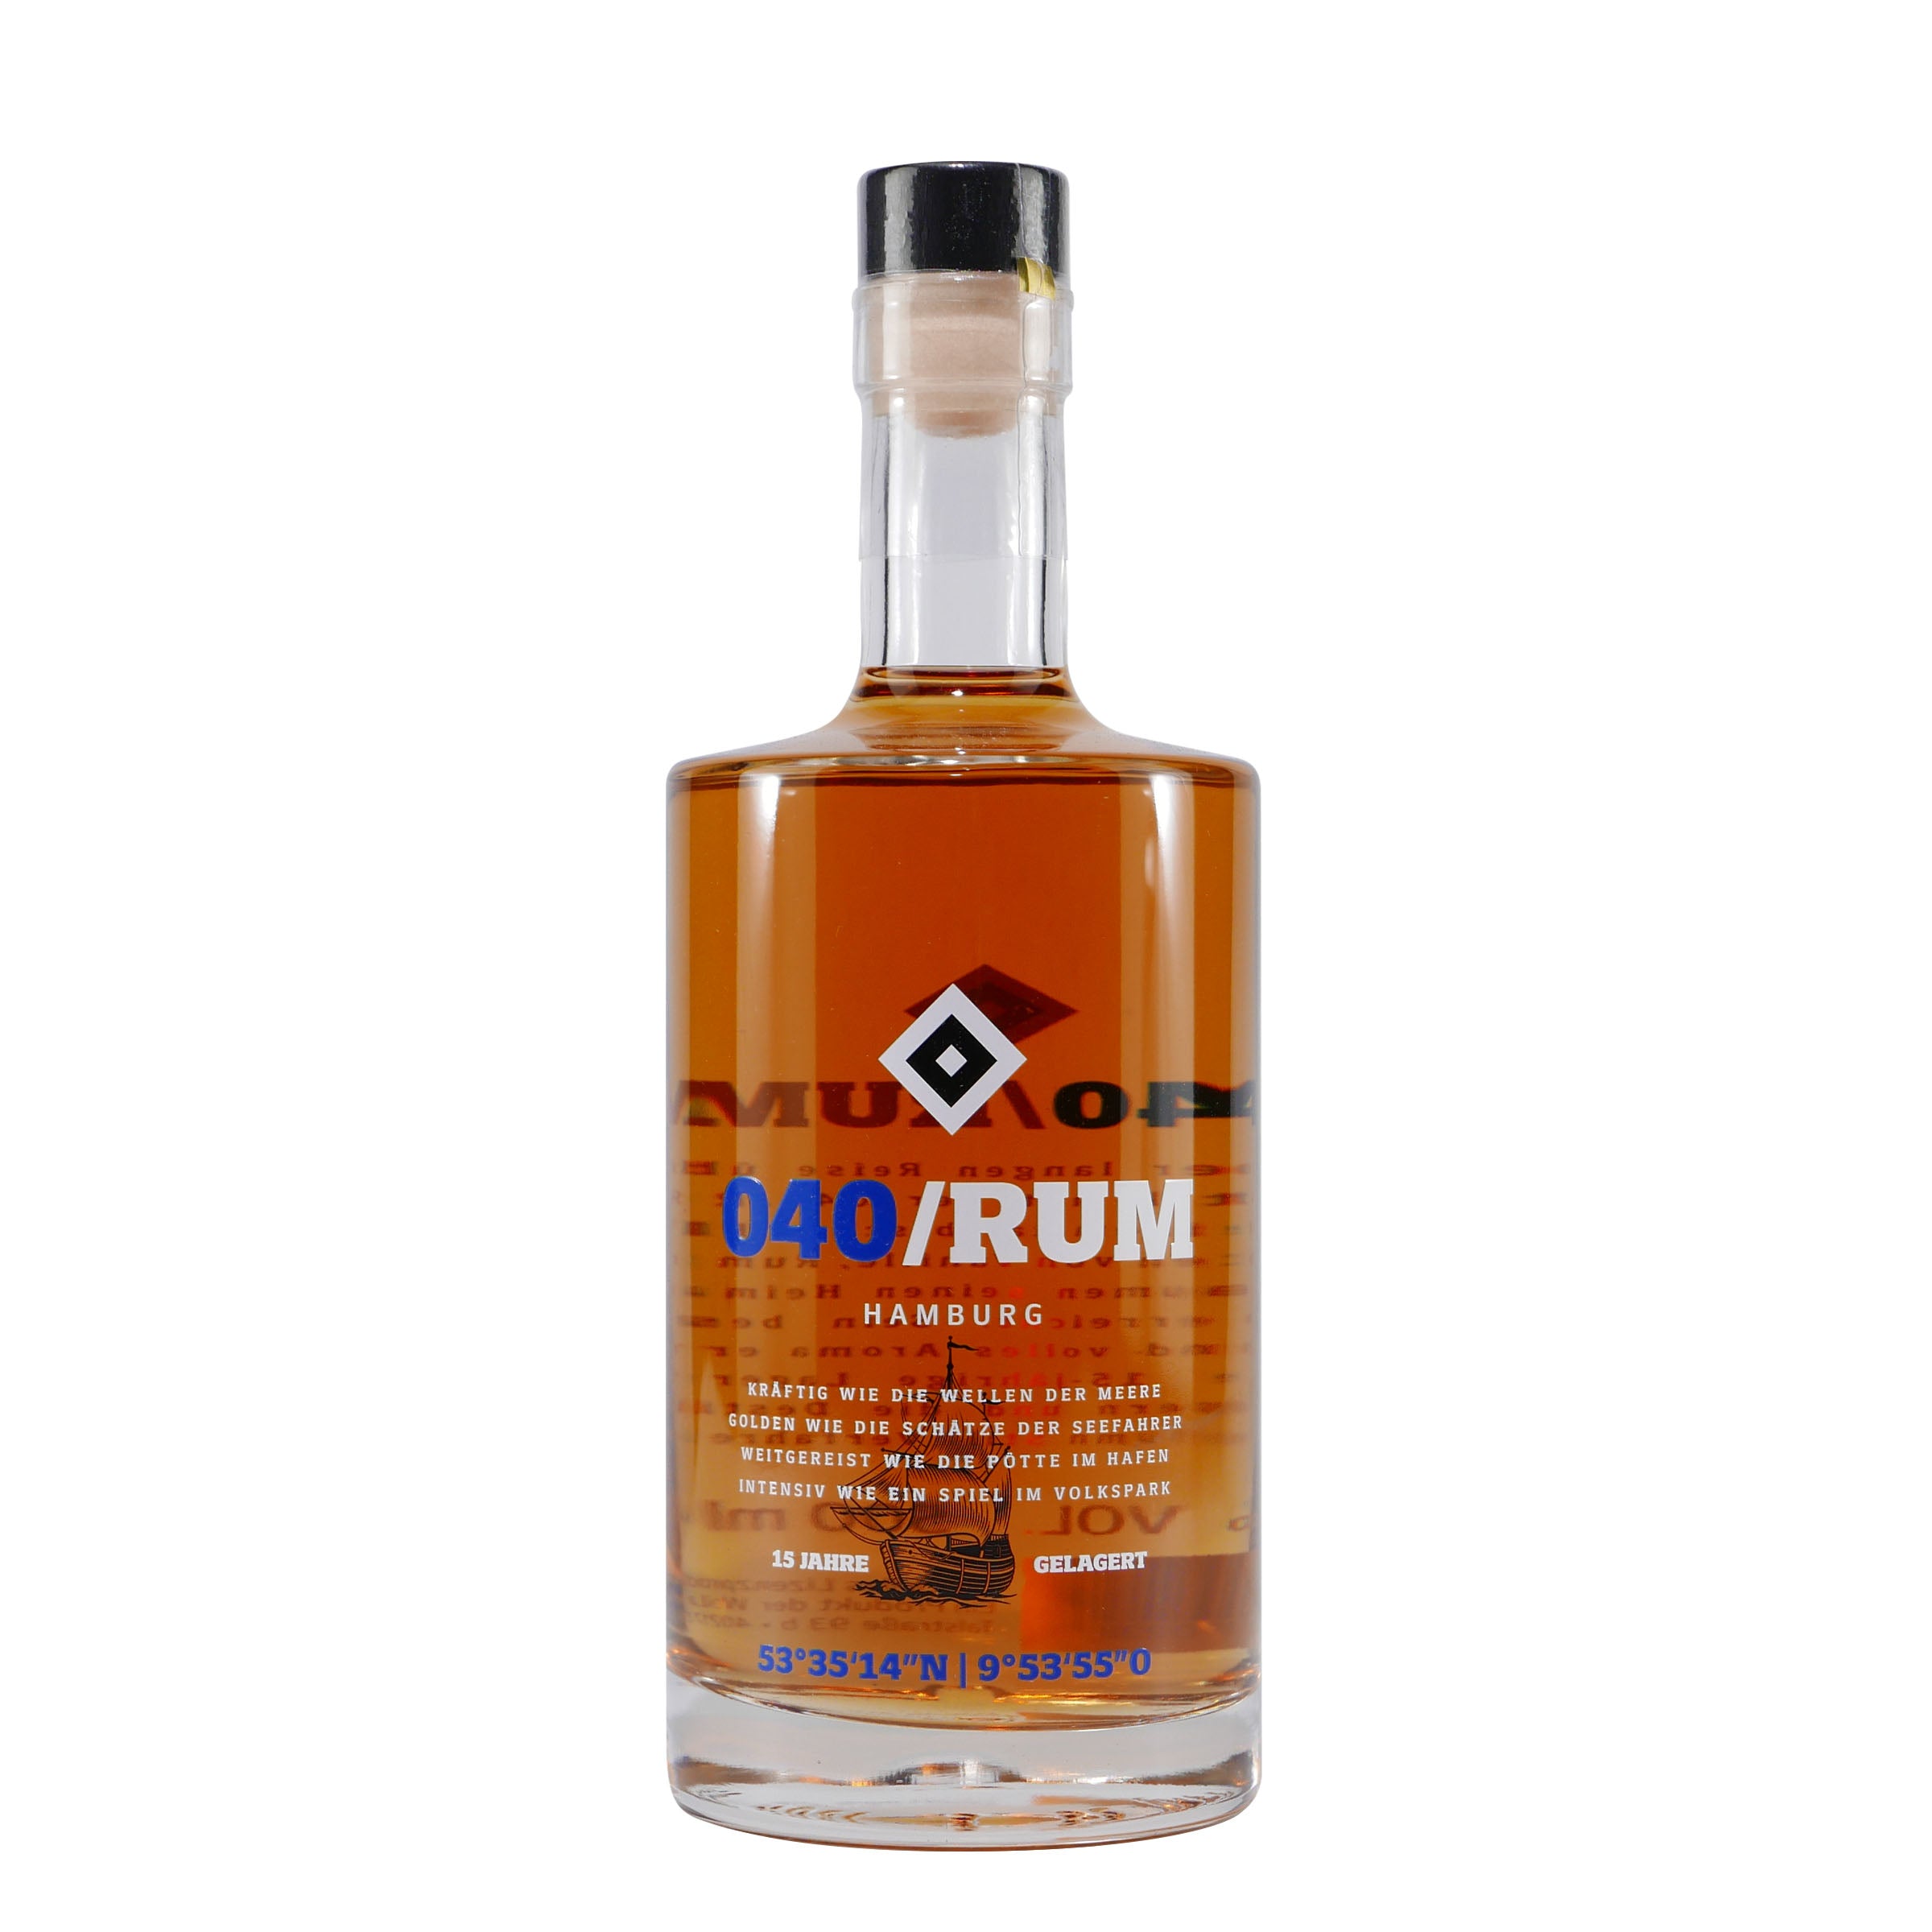 HSV 040 Rum mit Geschenk-Holzkiste